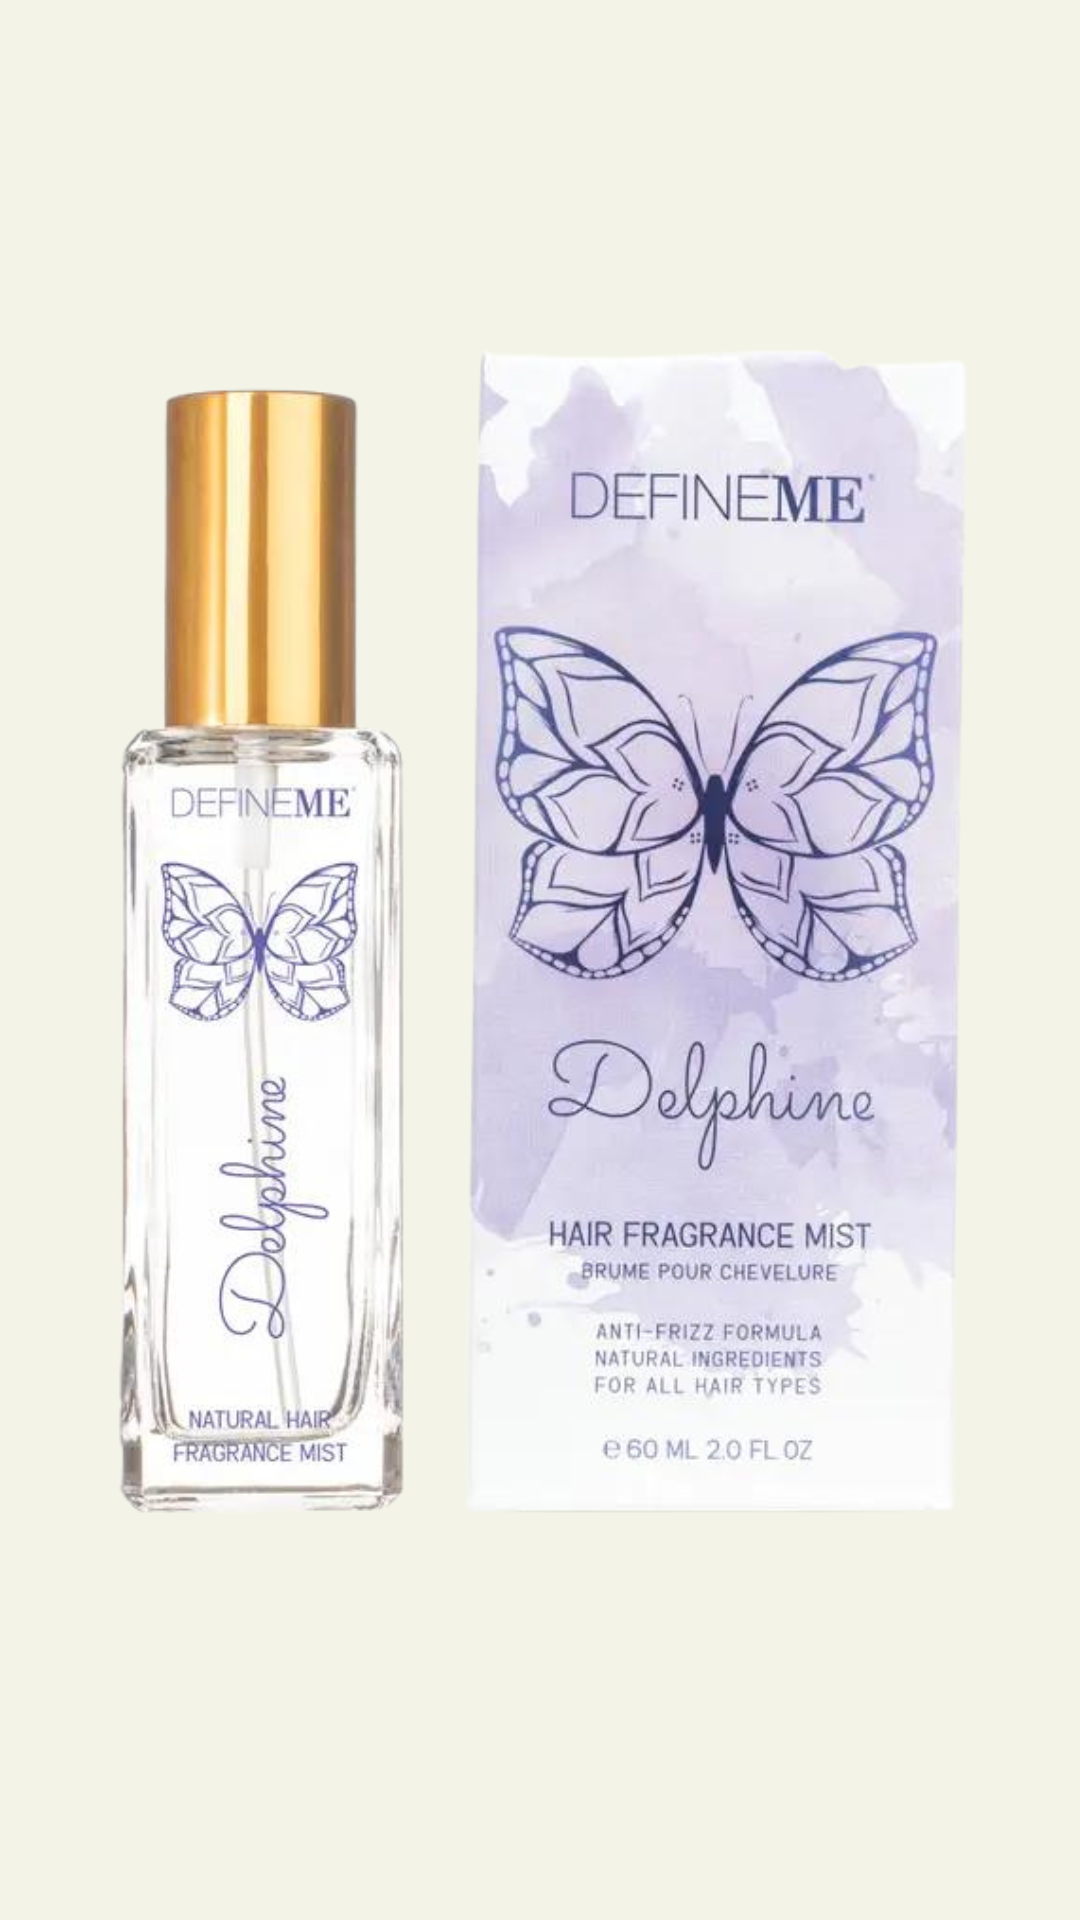 Delphine Hair Fragrance Mist